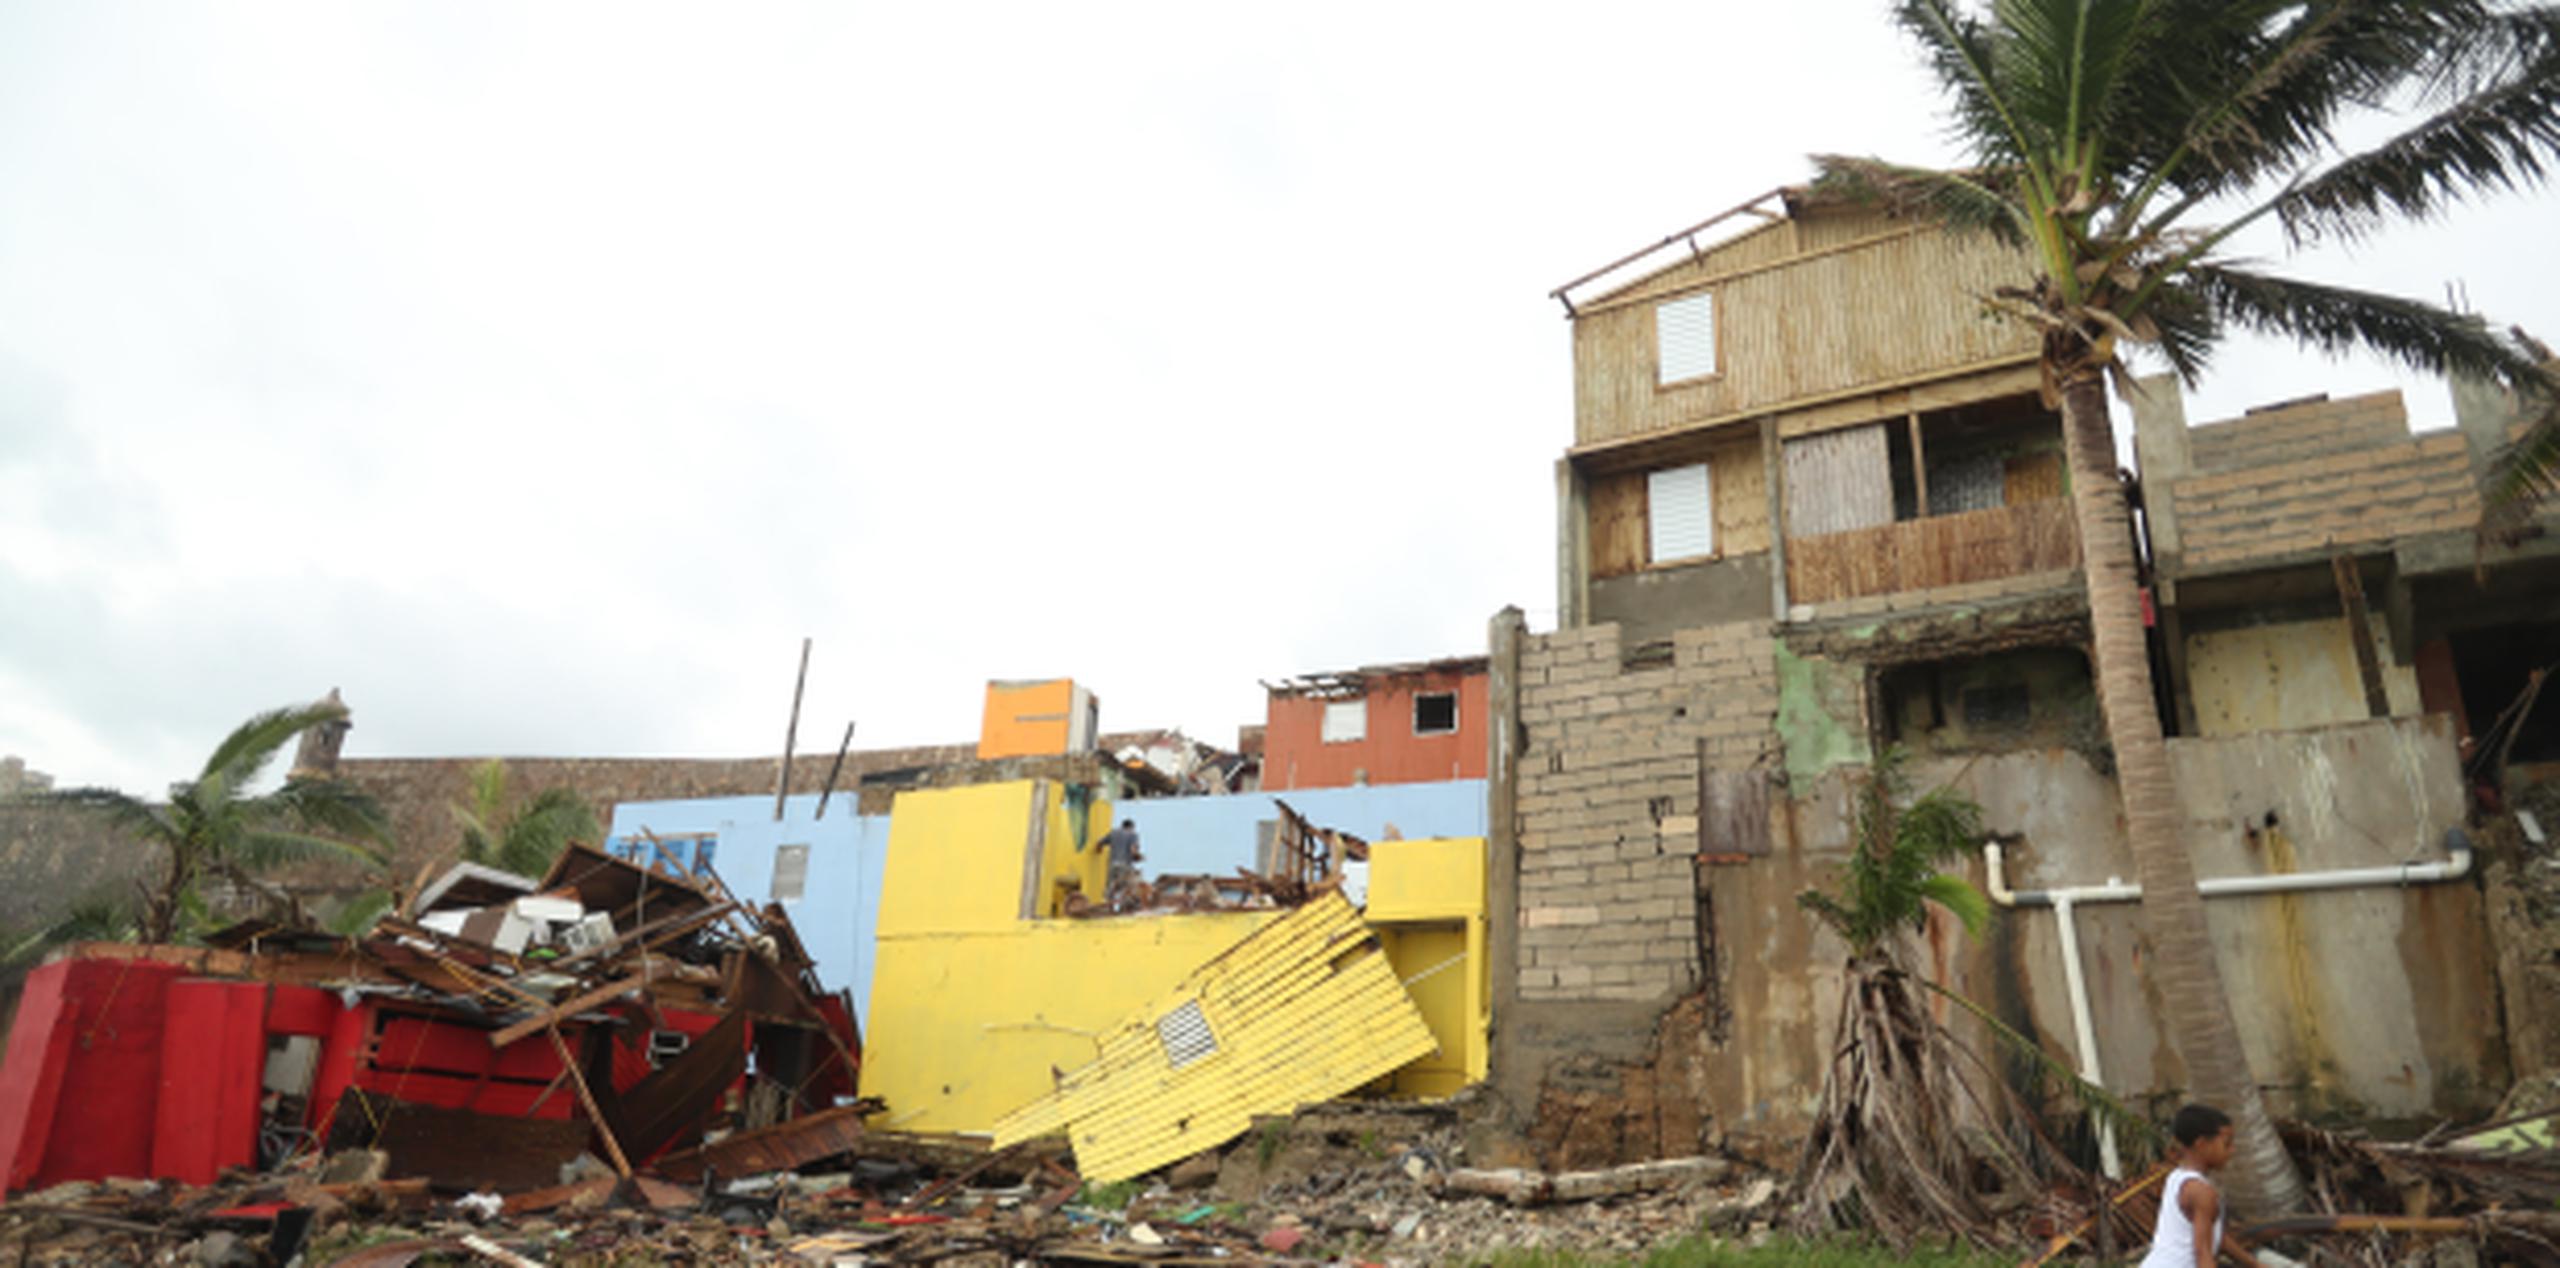 Decenas de casas perdieron sus techos y ventanas, se cayeron postes y se arruinaron autos, ante la mirada impotente de los vecinos. (vanessa.serra@gfrmedia.com)